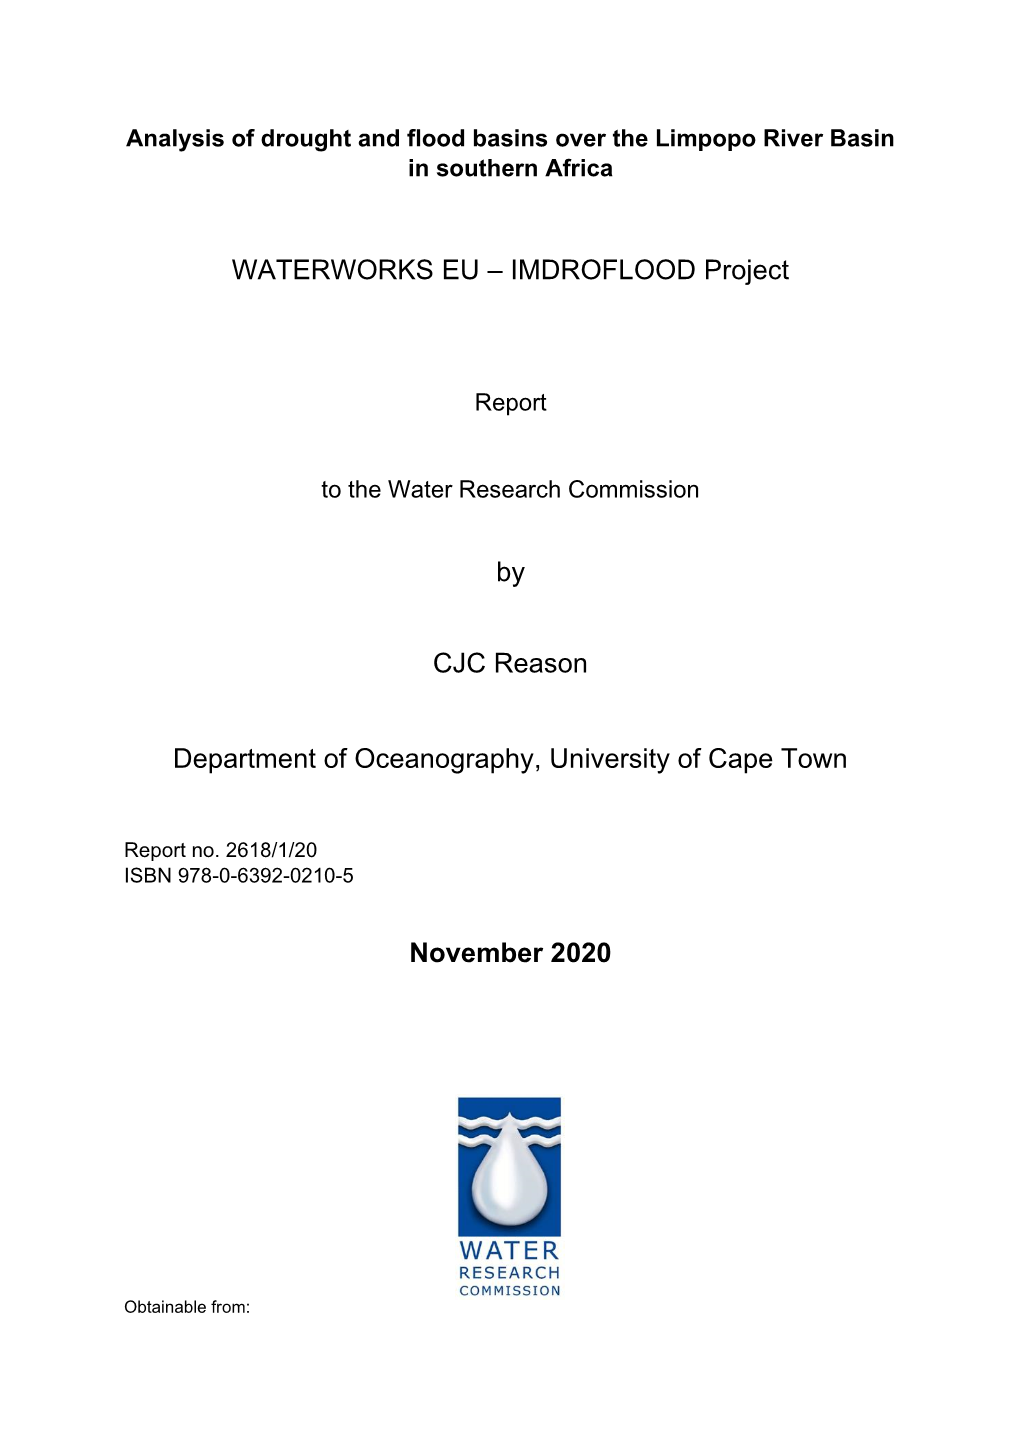 WATERWORKS EU – IMDROFLOOD Project